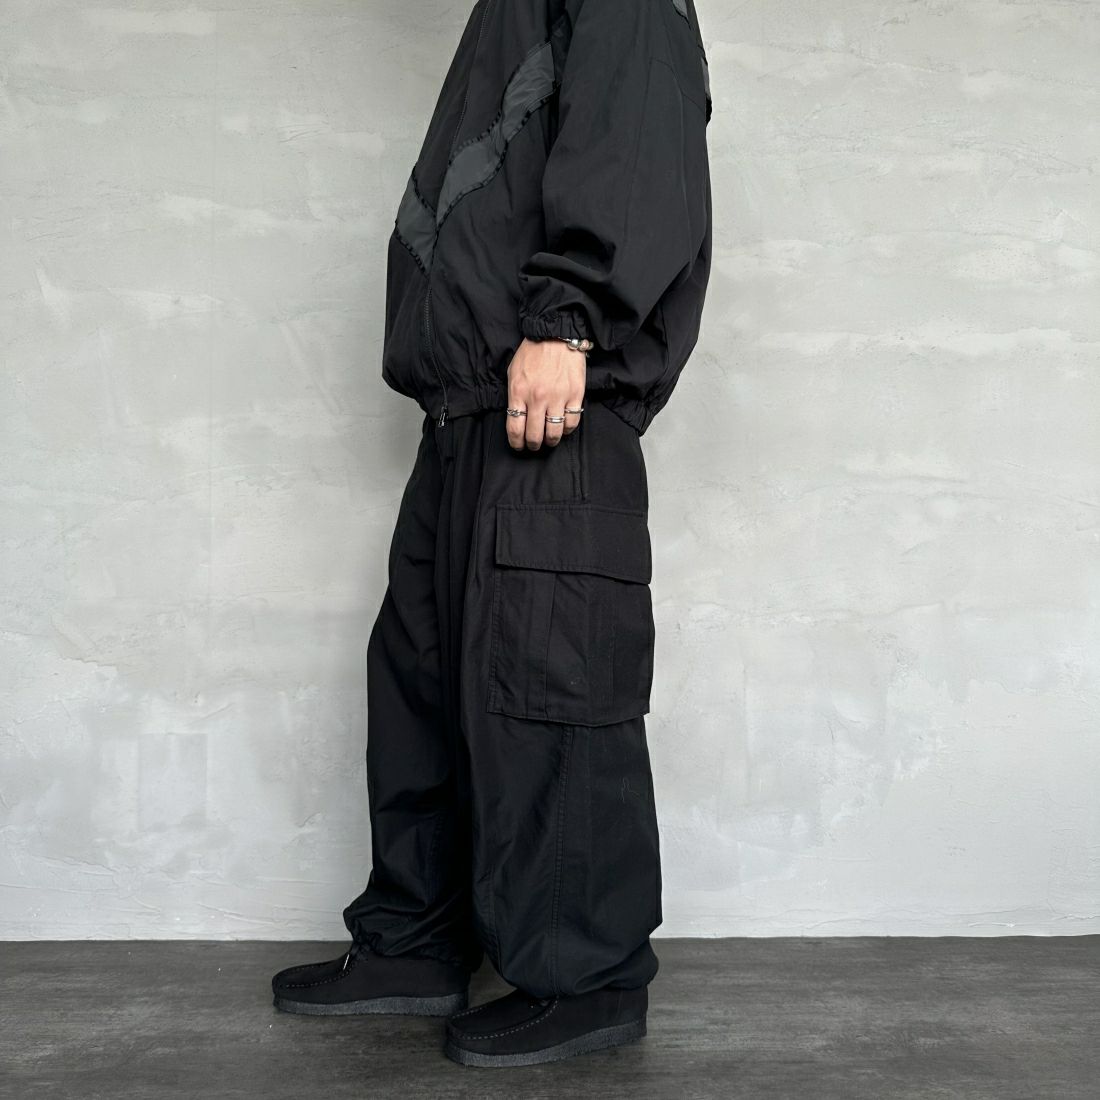 Jeans Factory Clothes [ジーンズファクトリークローズ] ワイドBDUカーゴパンツ [JFC-233-080] BLACK&&モデル身長：173cm 着用サイズ：L&&